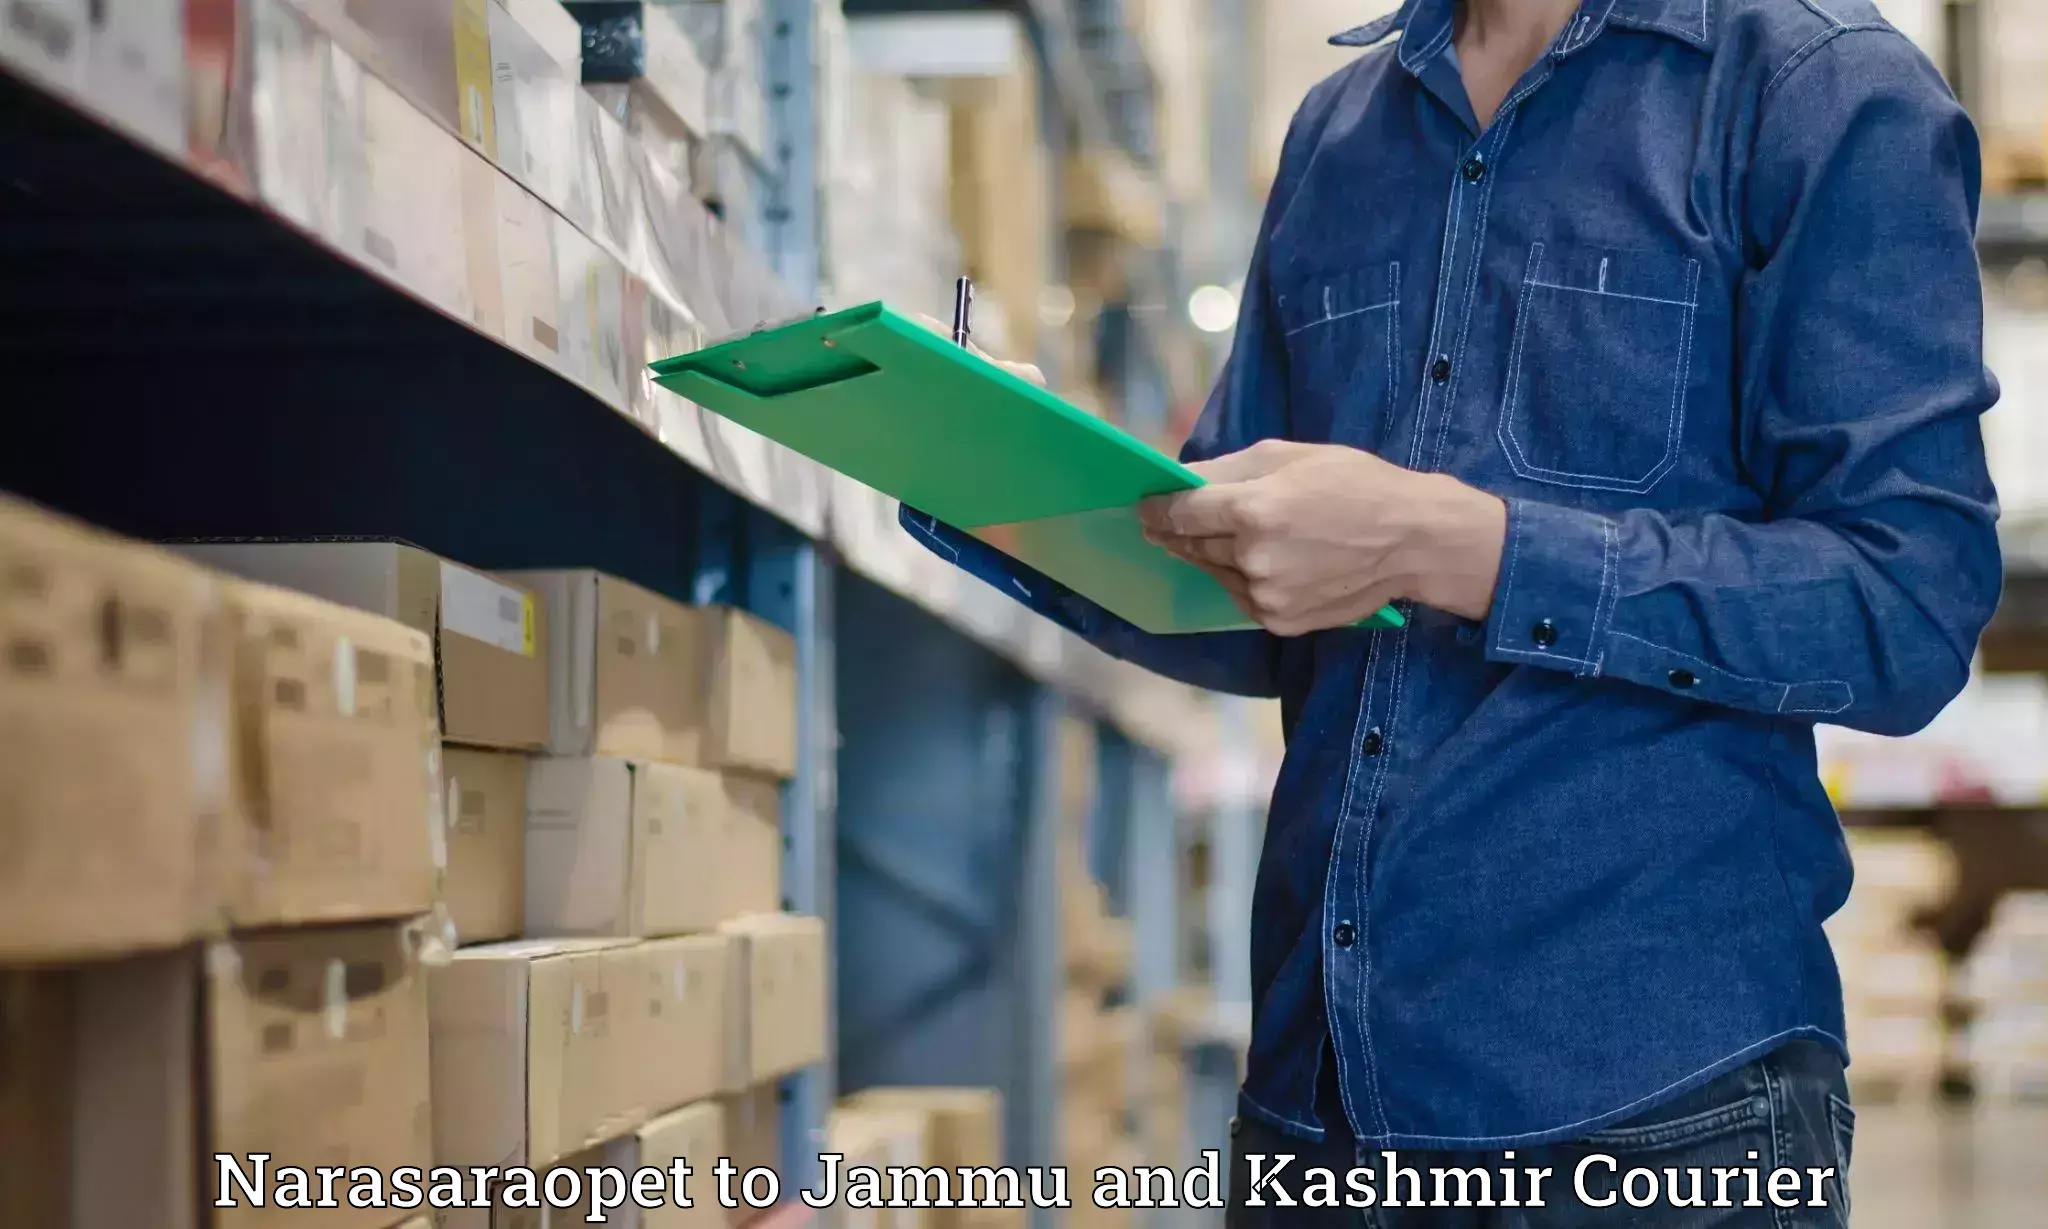 Cash on delivery service Narasaraopet to University of Jammu